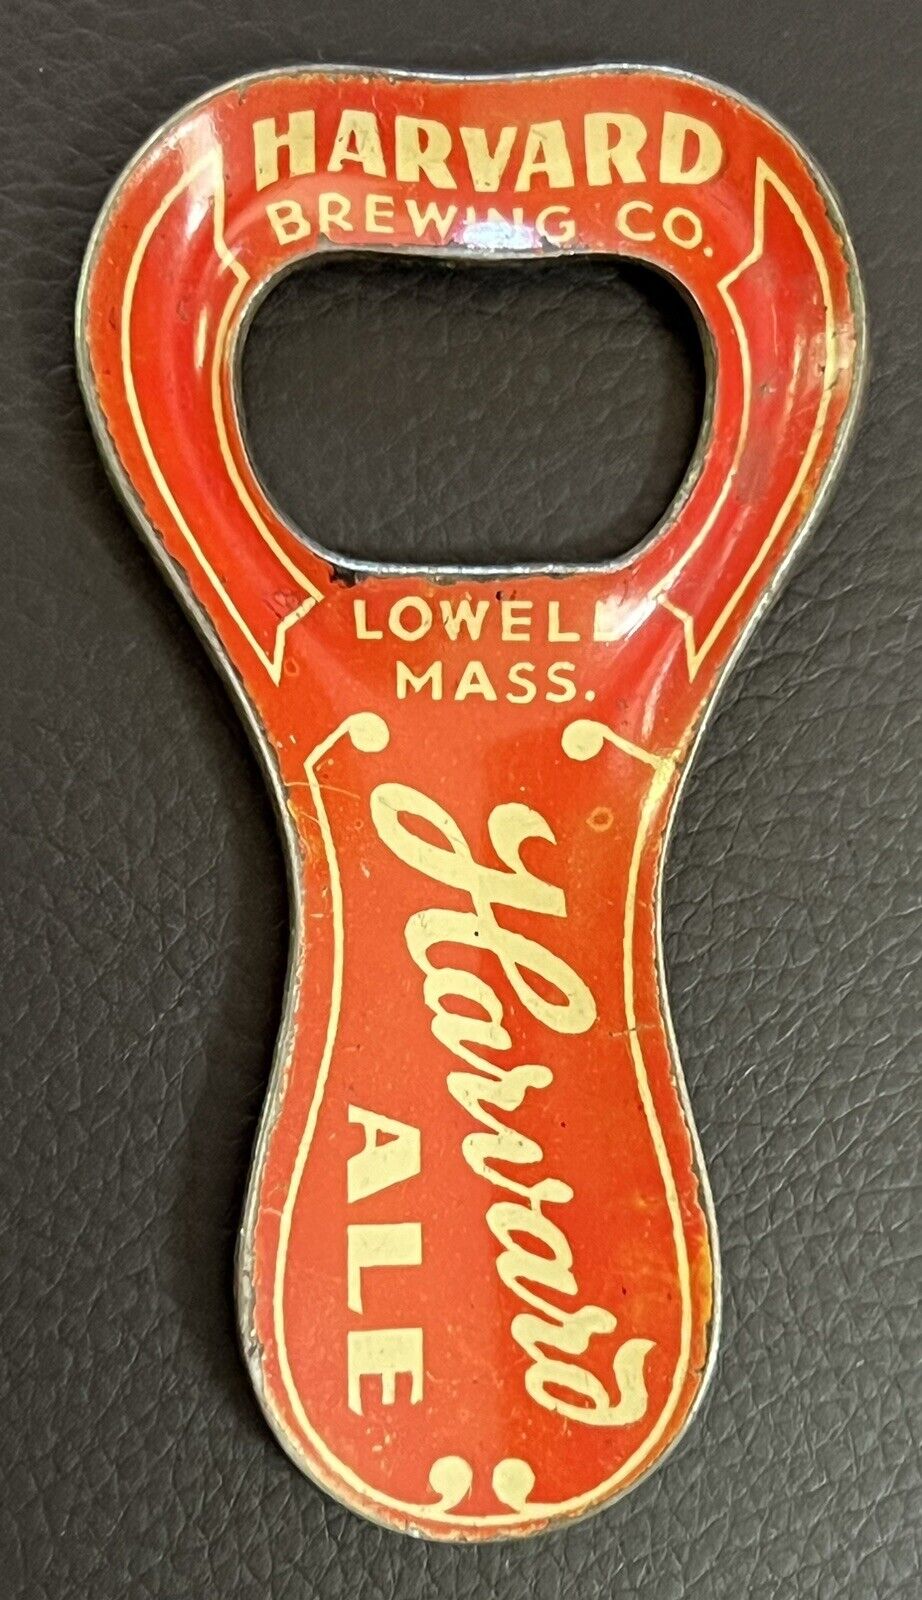 Excellent Rare Vintage Harvard Beer Enameled Beer Bottle Cap Opener - Lowell